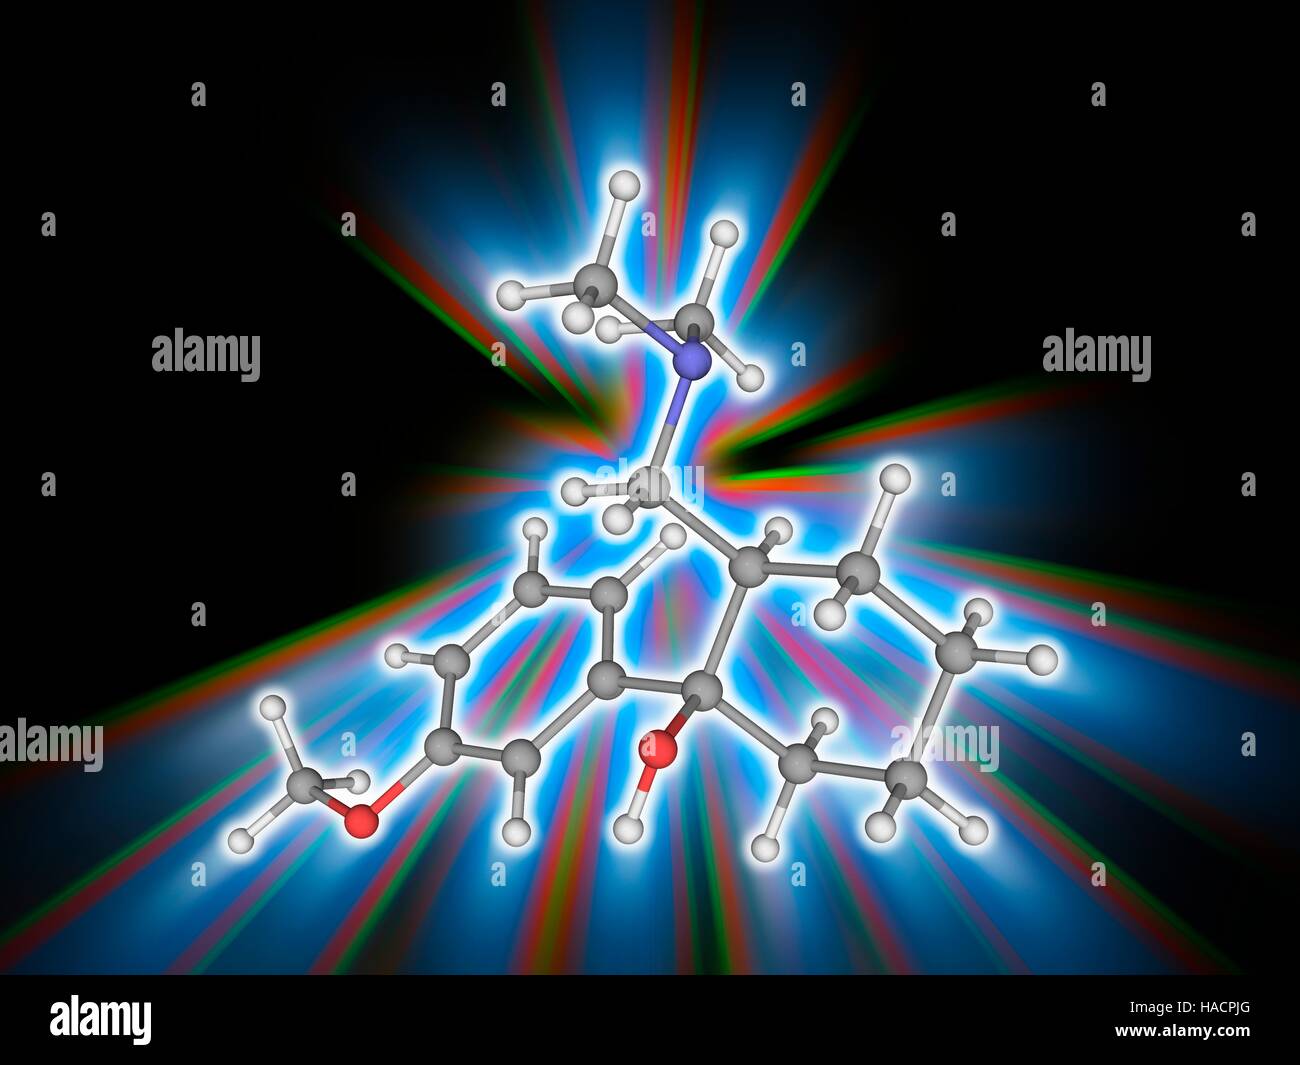 Tramadol. Molekulares Modell des Medikaments Tramadol (C16. H25. N.O2), eine zentral wirkende synthetische opioid-Analgetikum zur Behandlung von starken Schmerzen. Atome als Kugeln dargestellt werden und sind farblich gekennzeichnet: Kohlenstoff (grau), Wasserstoff (weiß), Stickstoff (blau) und Sauerstoff (rot). Abbildung. Stockfoto